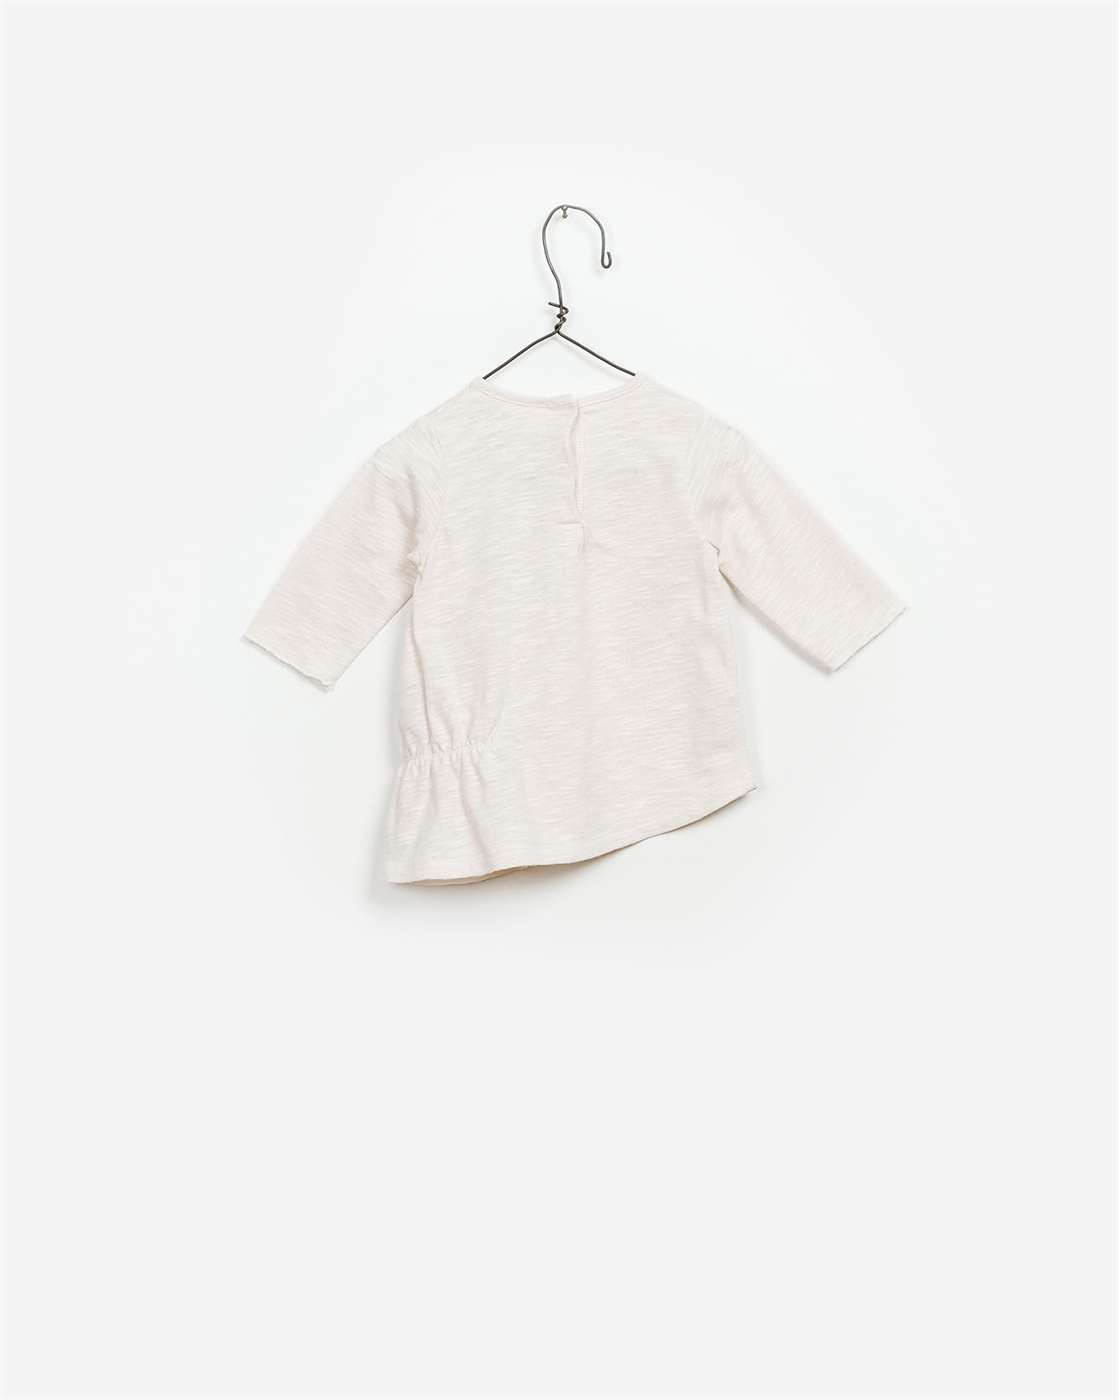 BeeBoo|BeeBoo PlayUp vêtement bébé baby cloth T shirt LS flame coton bio organic cotton blanc white 1